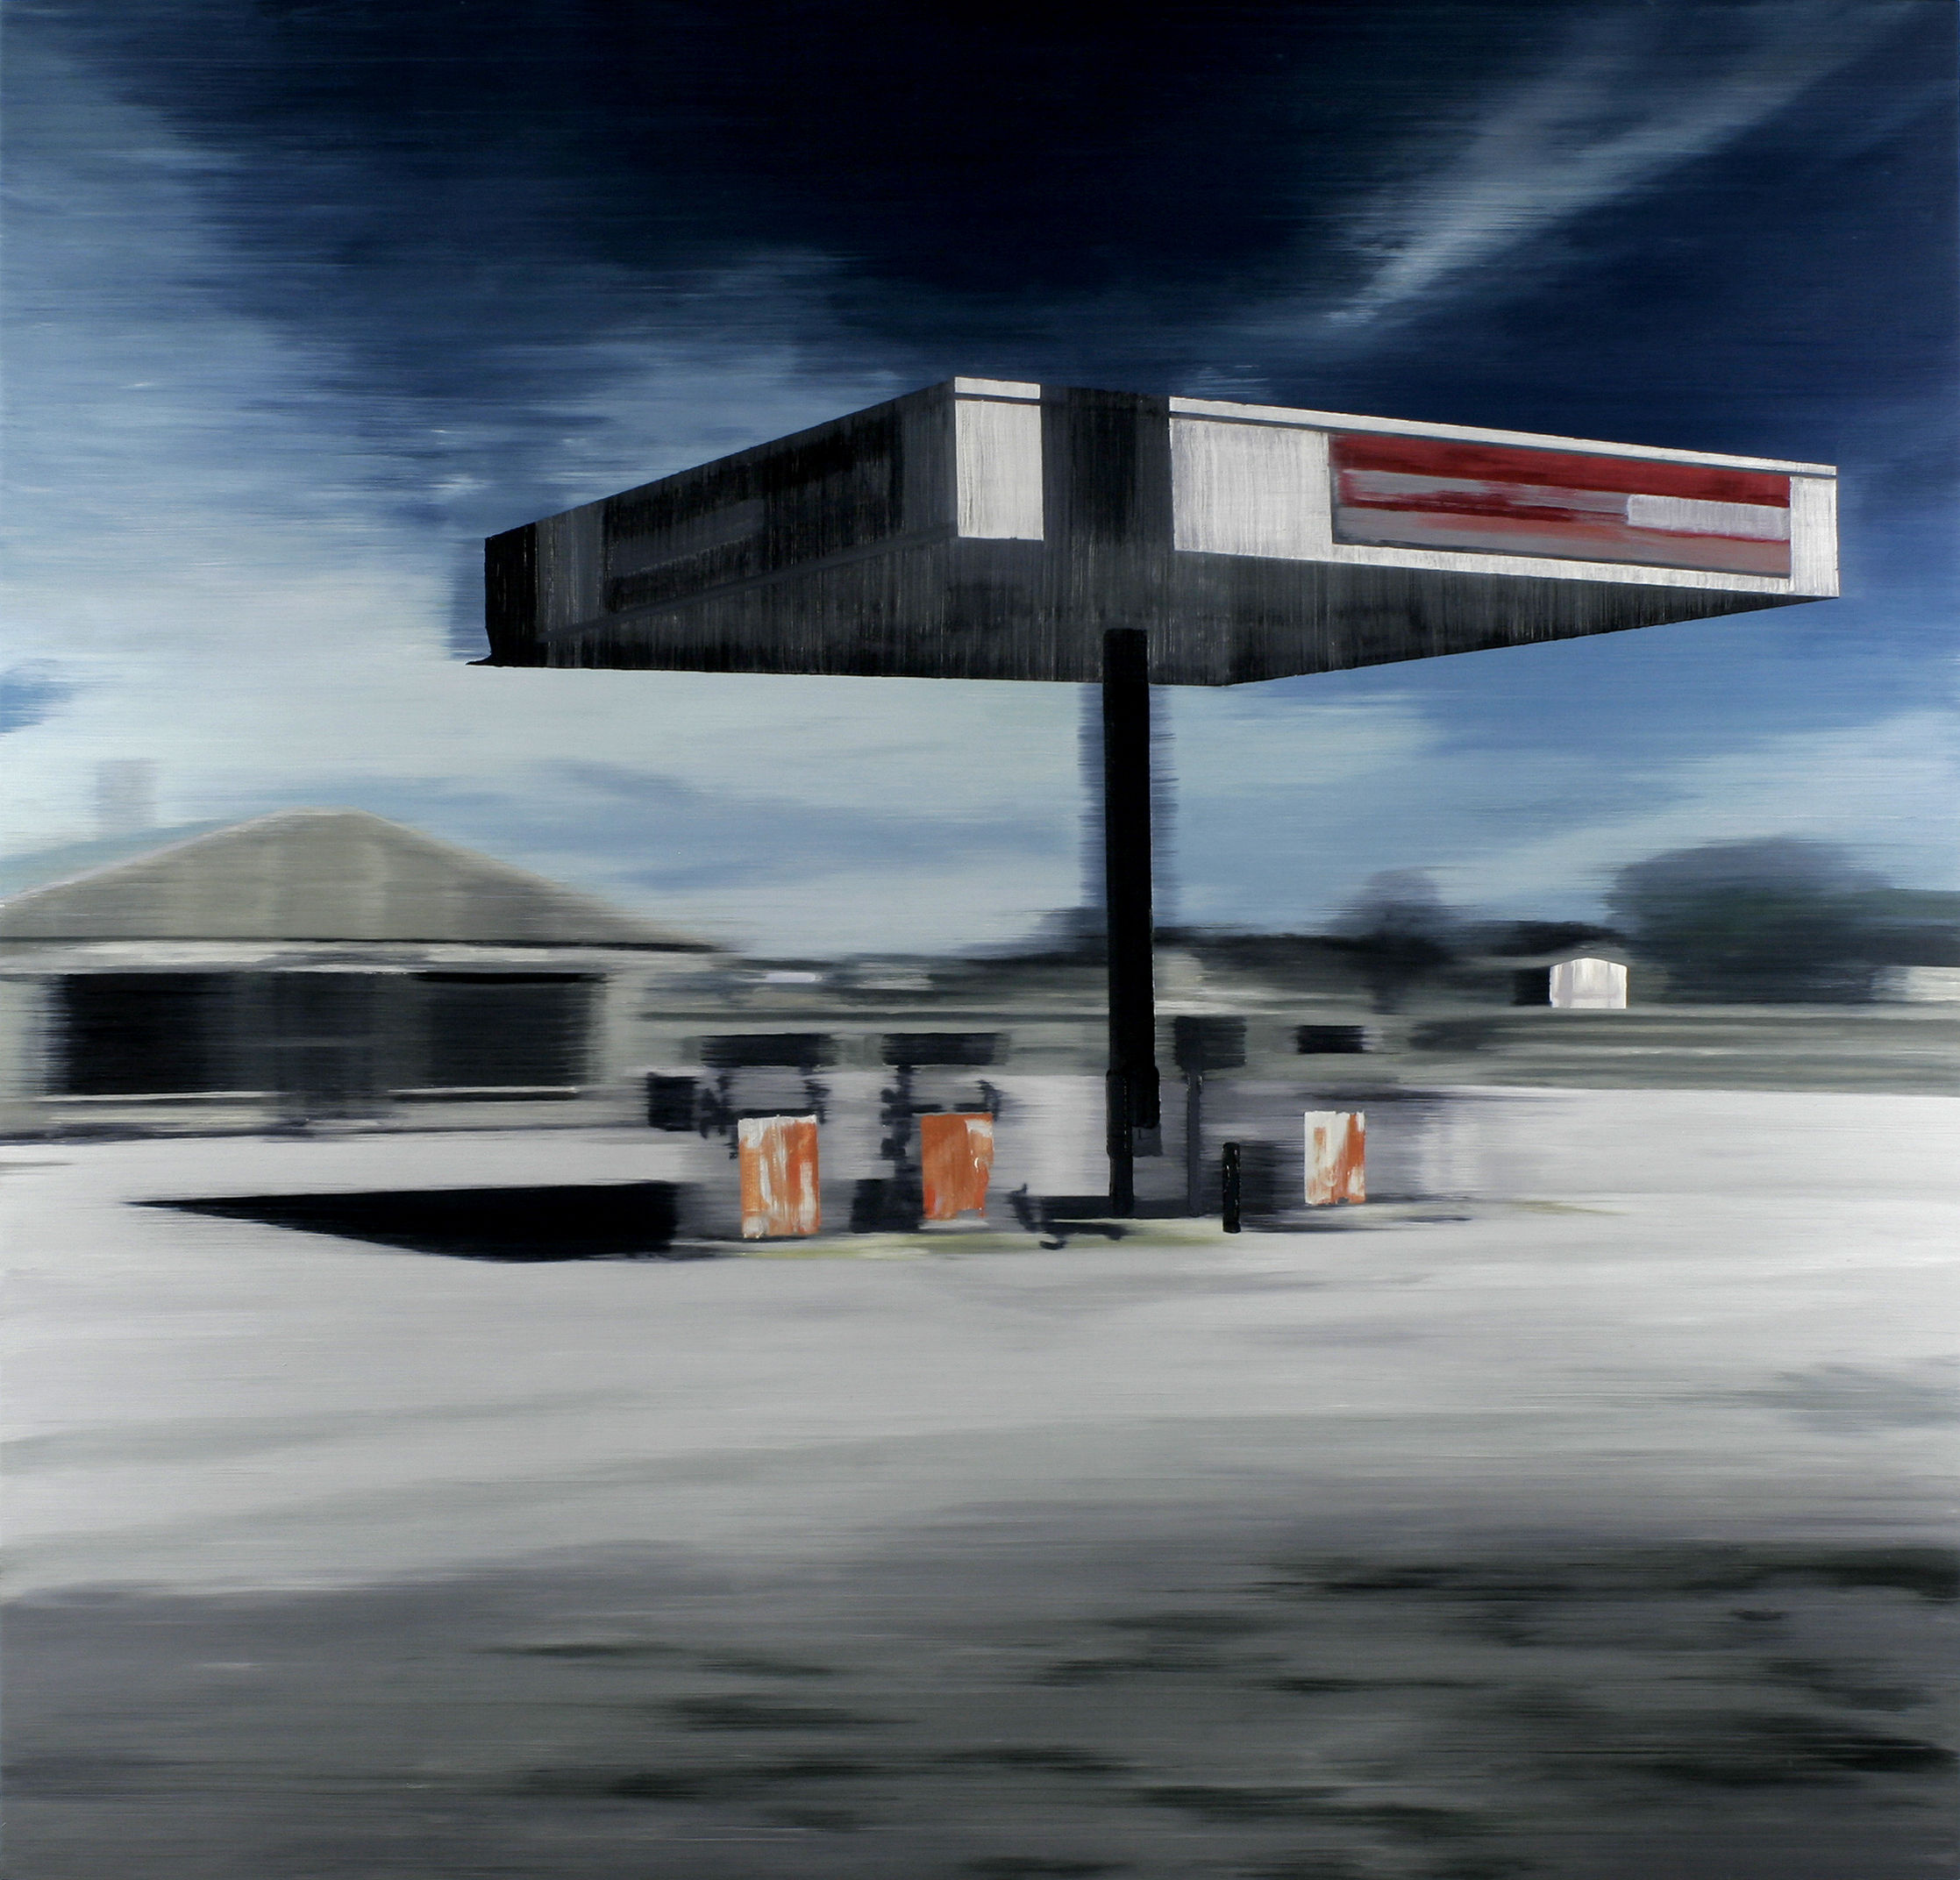 Deserted fuel station